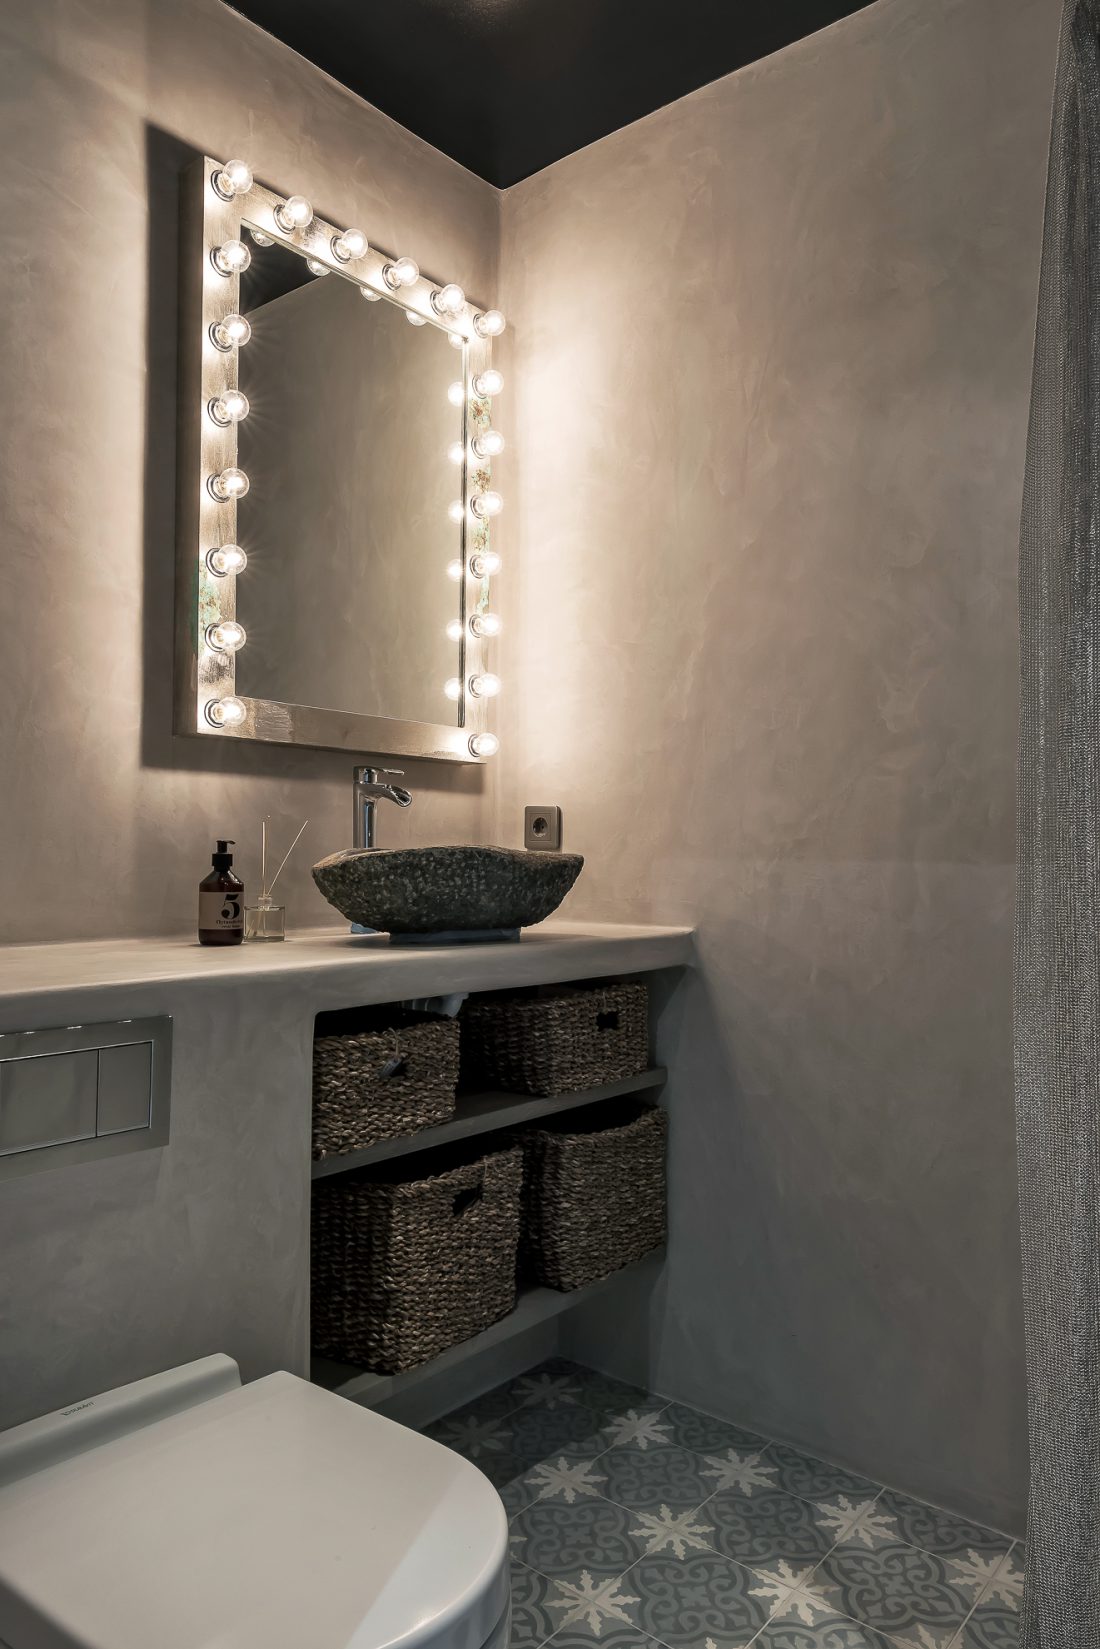 Toalett inrett i betong med en stor spegel med lampor runt sig.